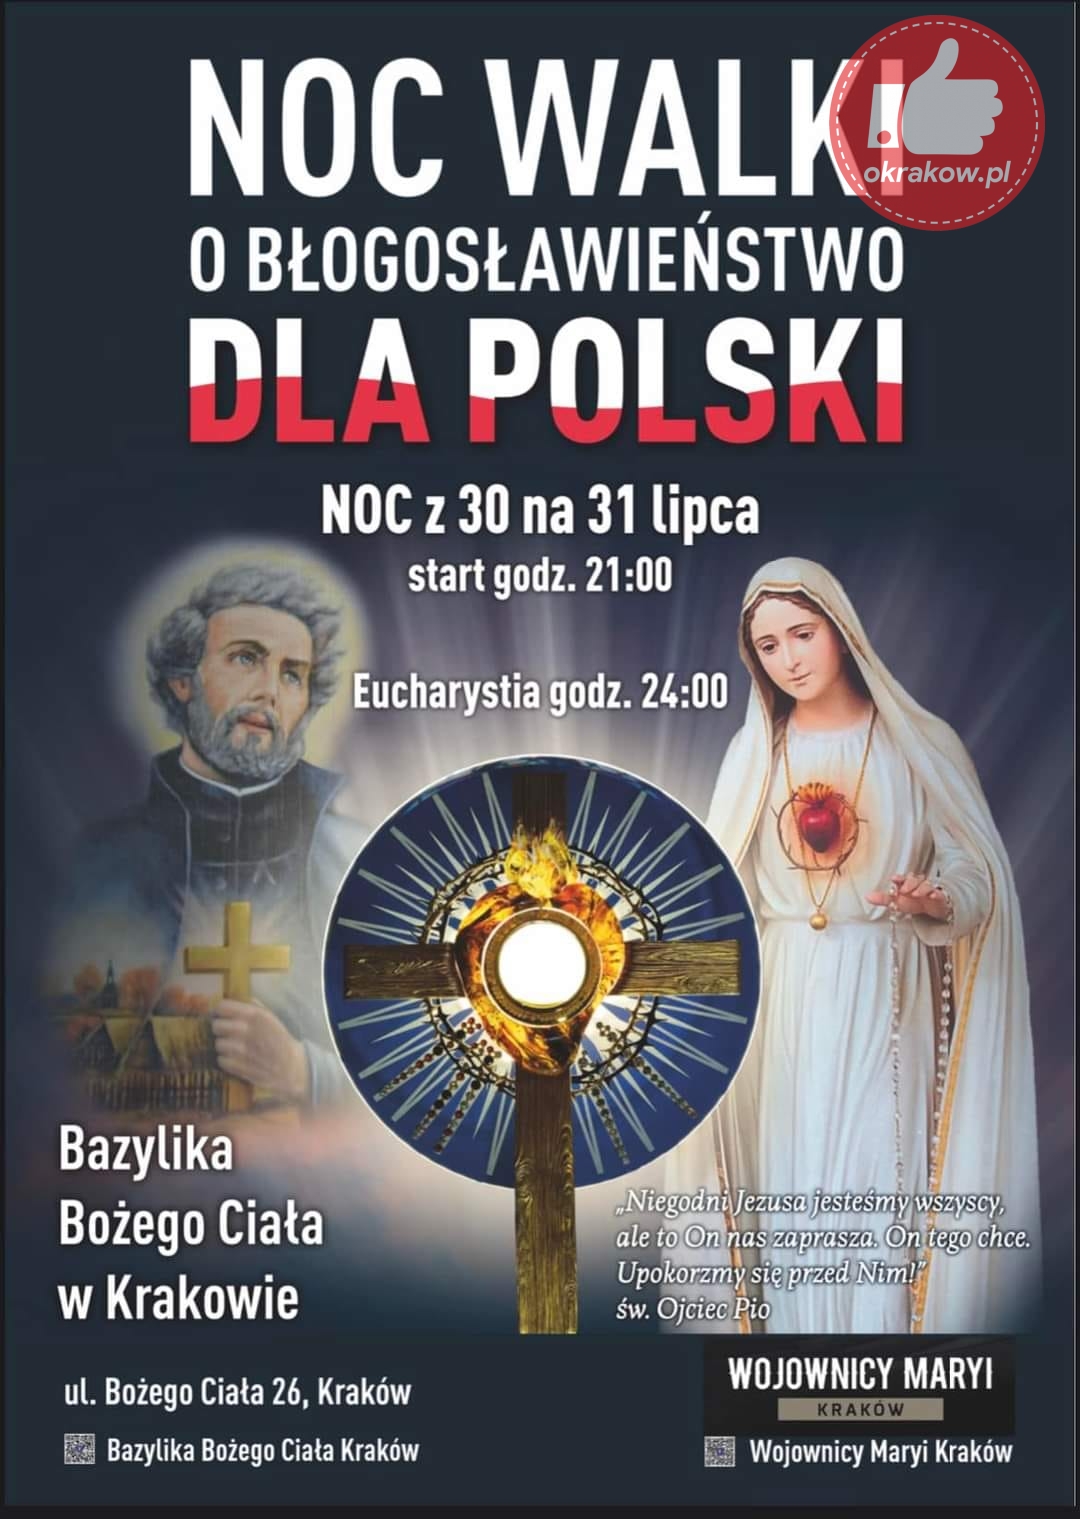 noc walki krakow - Noc Walki o Błogosławieństwo dla Polski 30-31 lipca 2022 w Krakowie